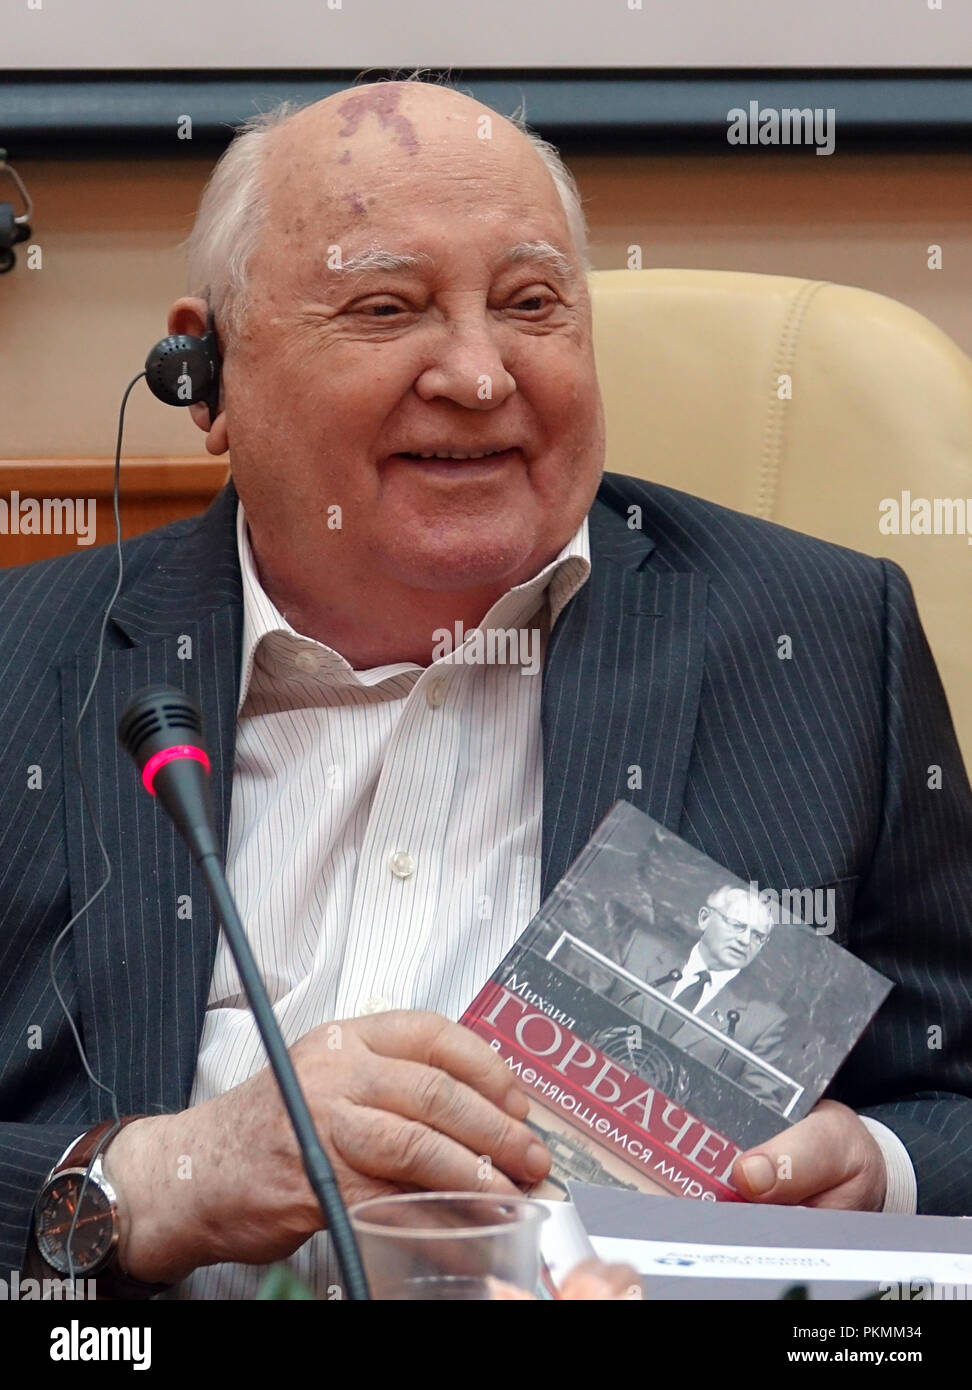 13 settembre 2018, Russia, Mosca: Mikhail Gorbaciov, ex presidente sovietico, tenendo il suo nuovo libro in mano. Il titolo russo si traduce come: "In un mondo che cambia". Il 87-anno vecchio premio Nobel per la pace chiamato per il superamento della divisione di corrente tra la Russia e l'Occidente. Foto: Friedemann Kohler/dpa Foto Stock